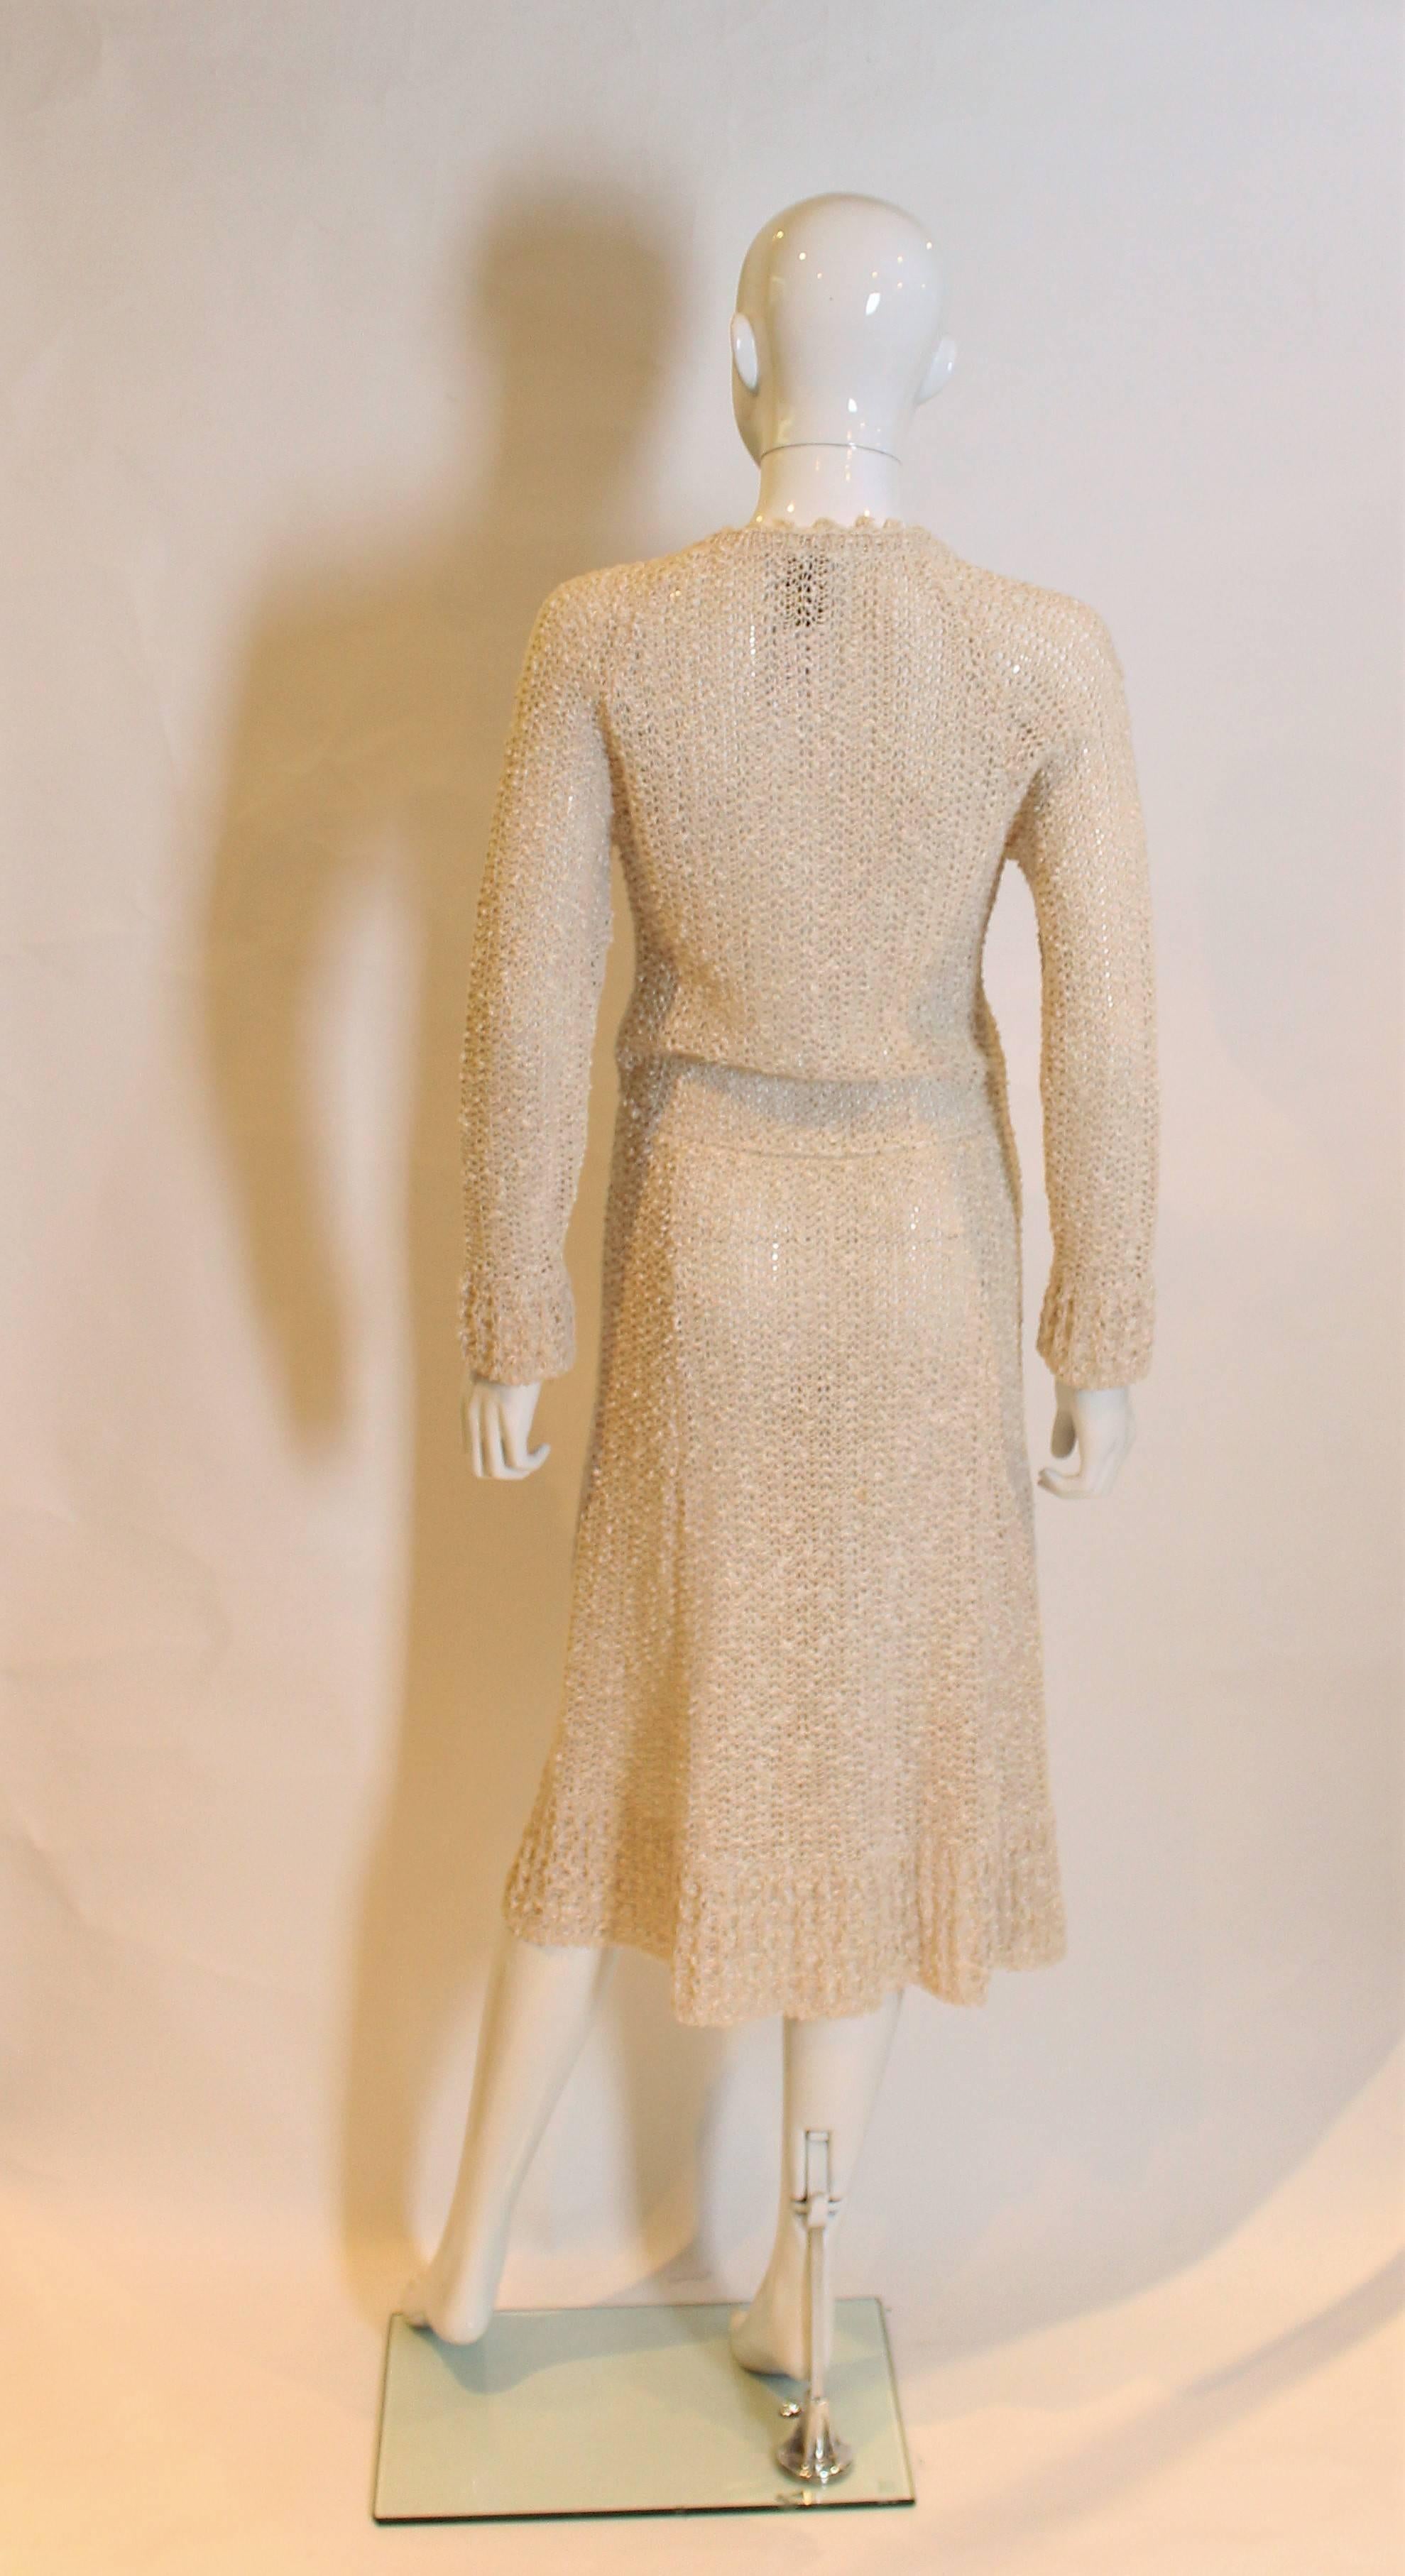 Women's 1970s Handloomed Crochet Dress